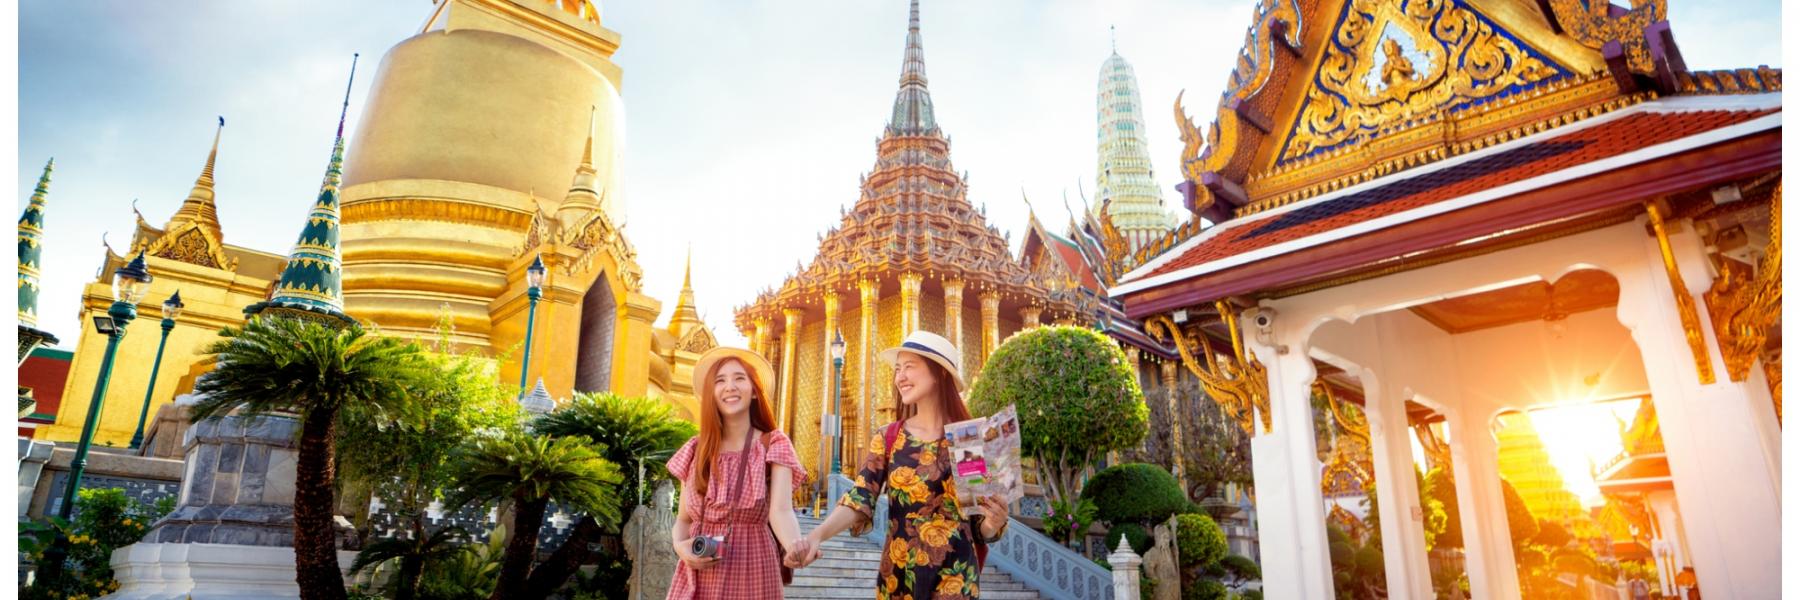 دليلك للسياحة في تايلاند